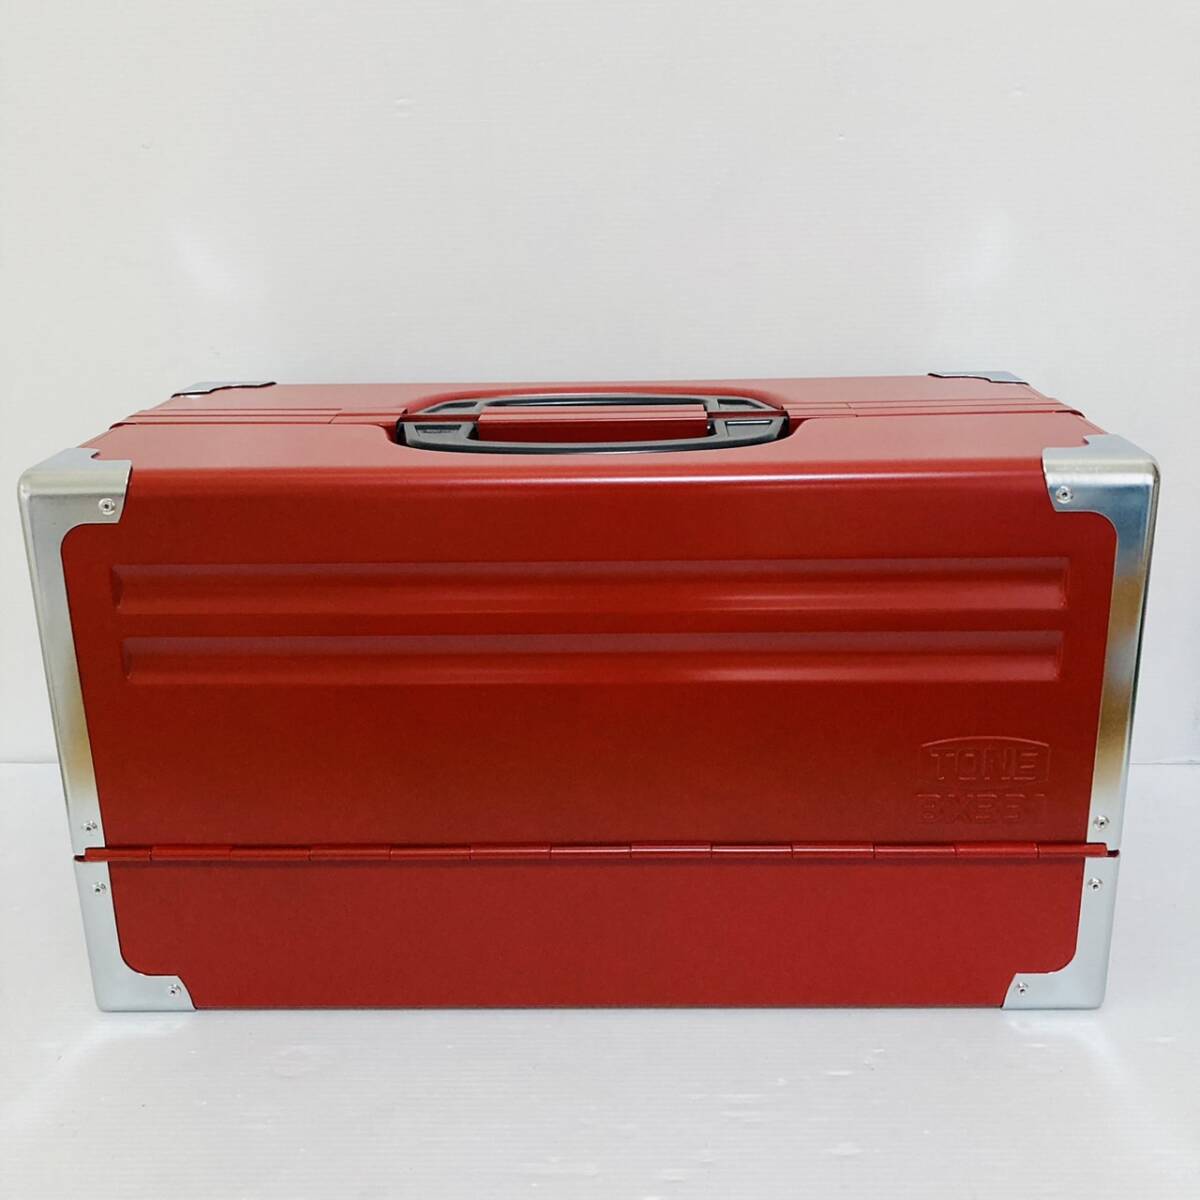 即決送料無料!!未使用品 TONE トネ BX331 赤 RED レッド 3段両開き ツールケース 工具箱 道具箱 携行型/Y042-49の画像2